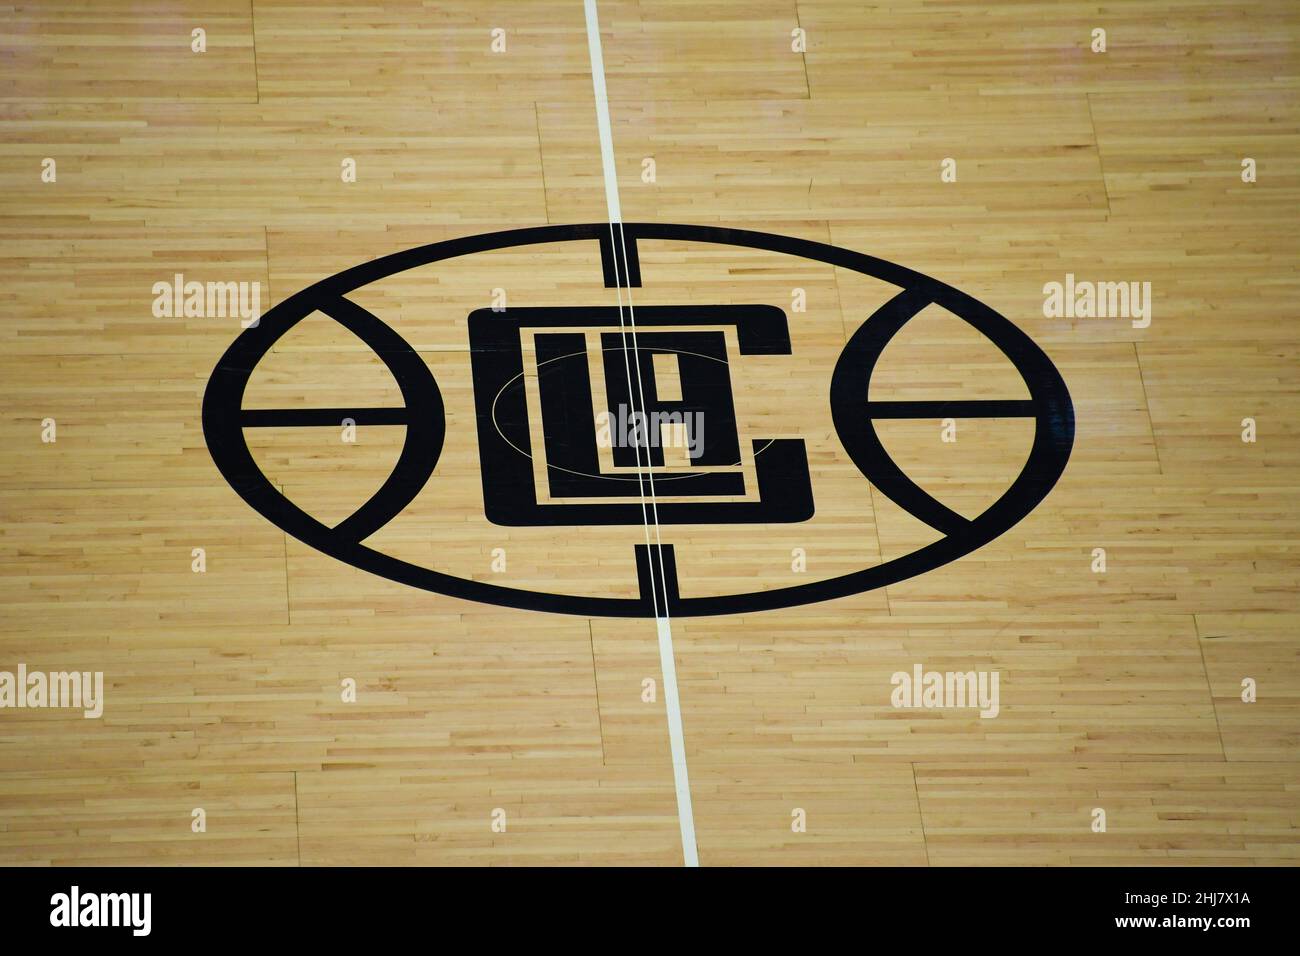 Vista dettagliata del logo LA Clippers al centro del campo durante una partita di pallacanestro NBA tra LA Clippers e Brooklyn Nets, lunedì 27 dicembre 20 Foto Stock